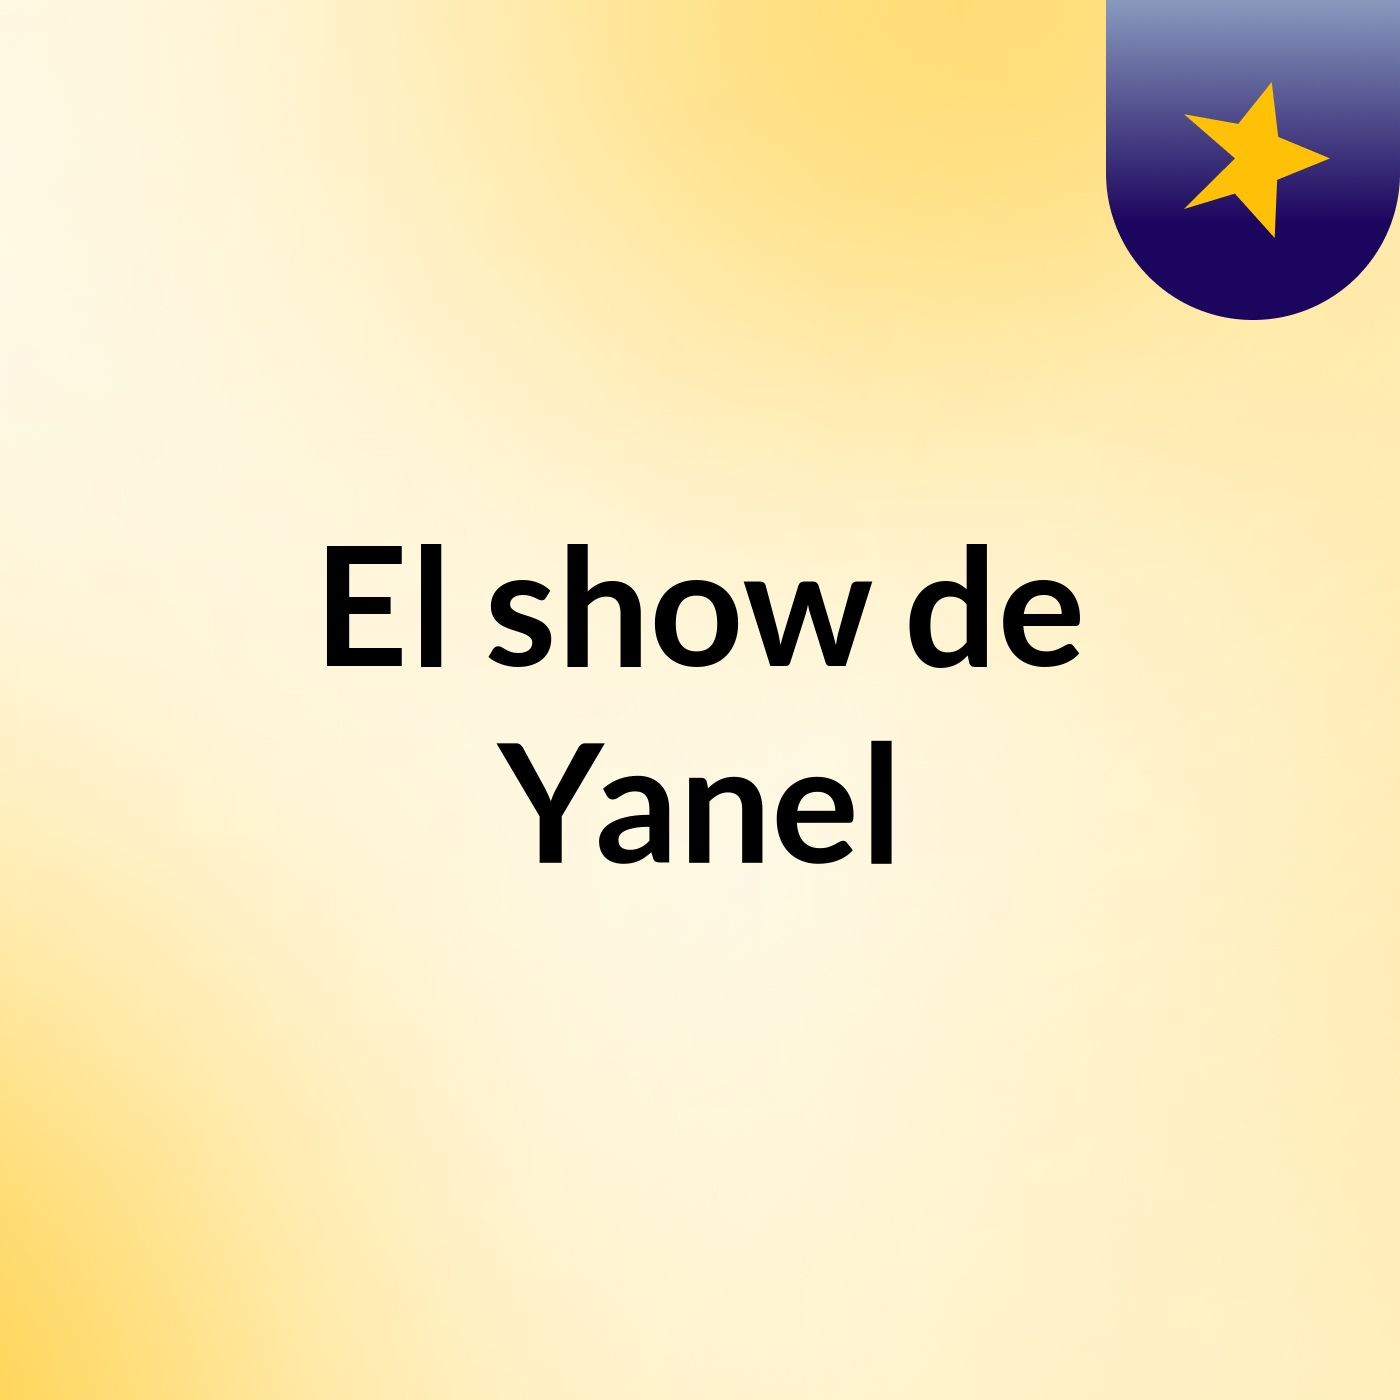 El show de Yanel